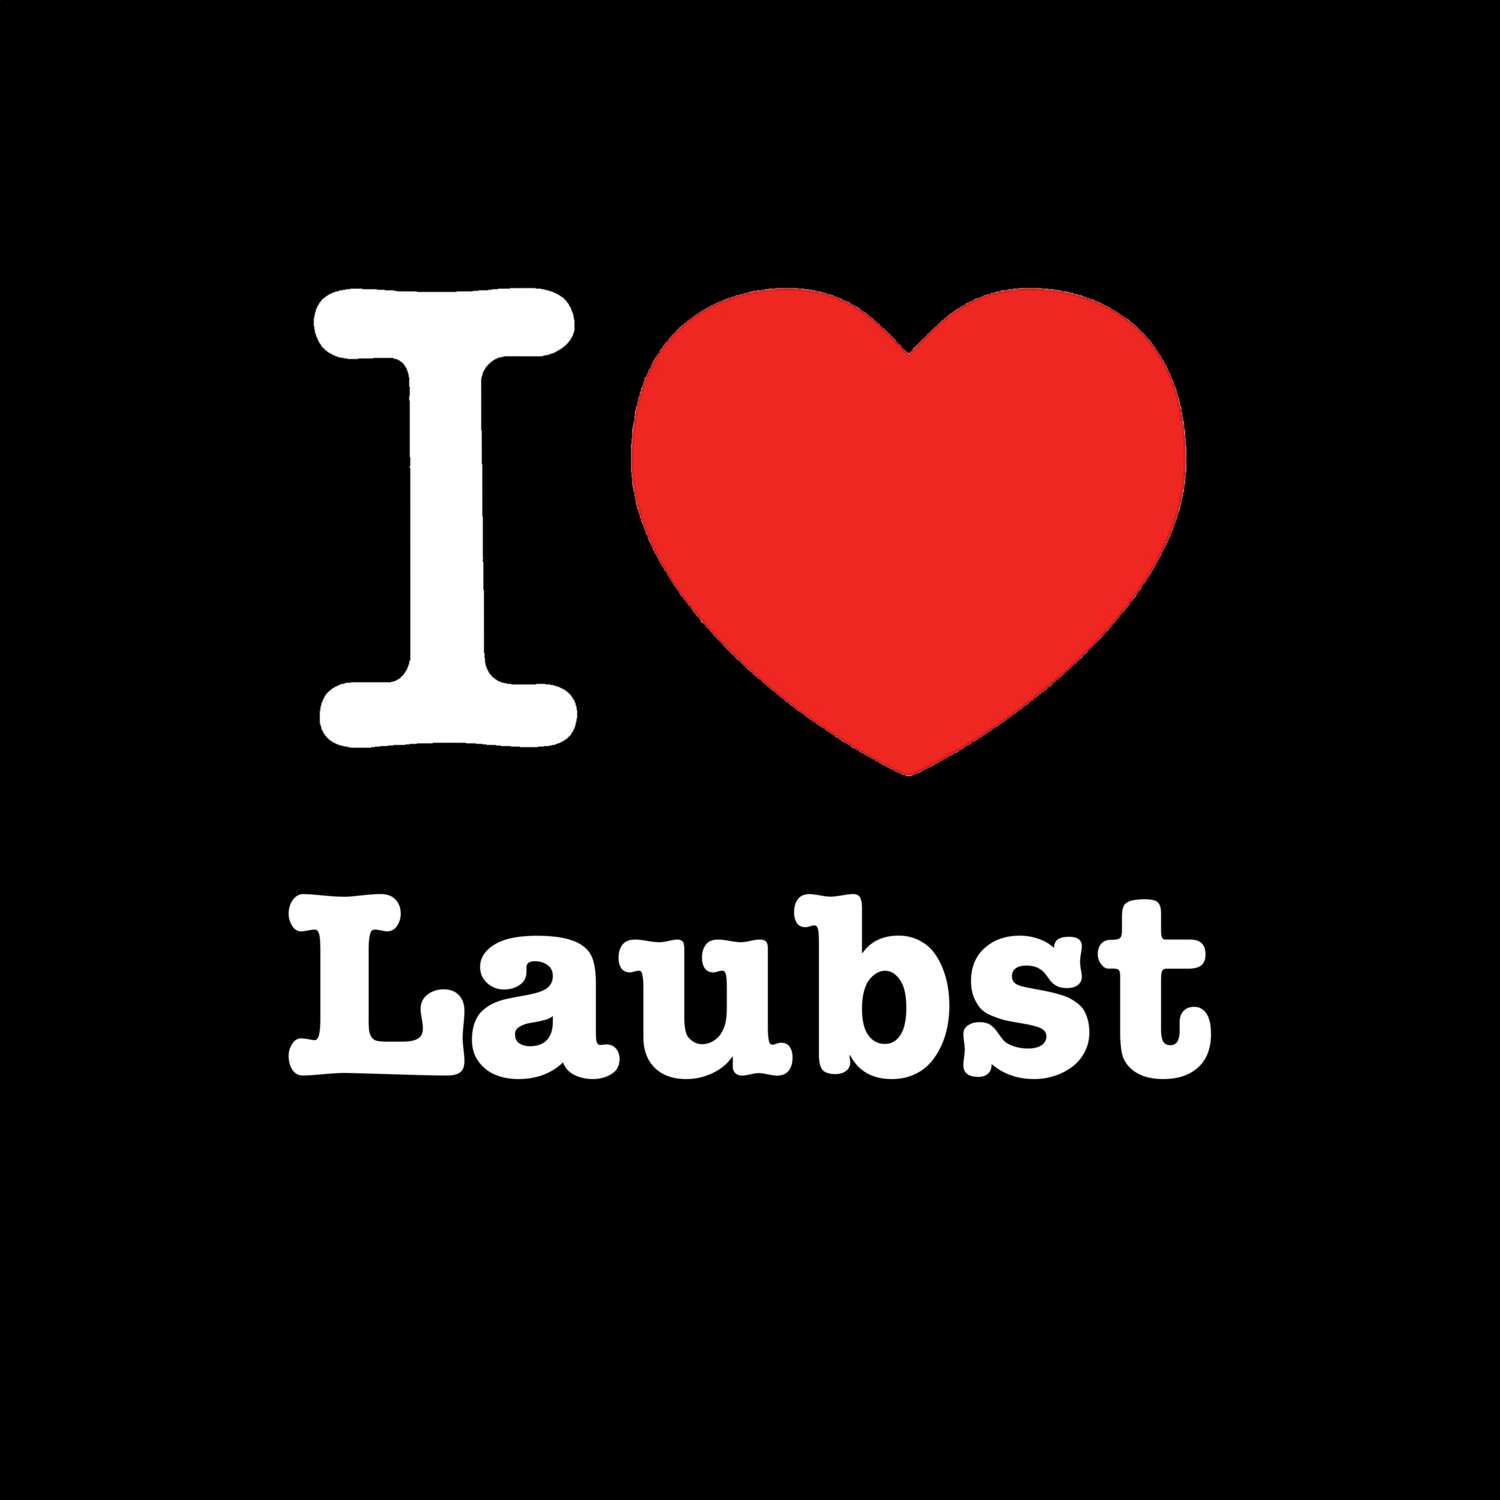 Laubst T-Shirt »I love«